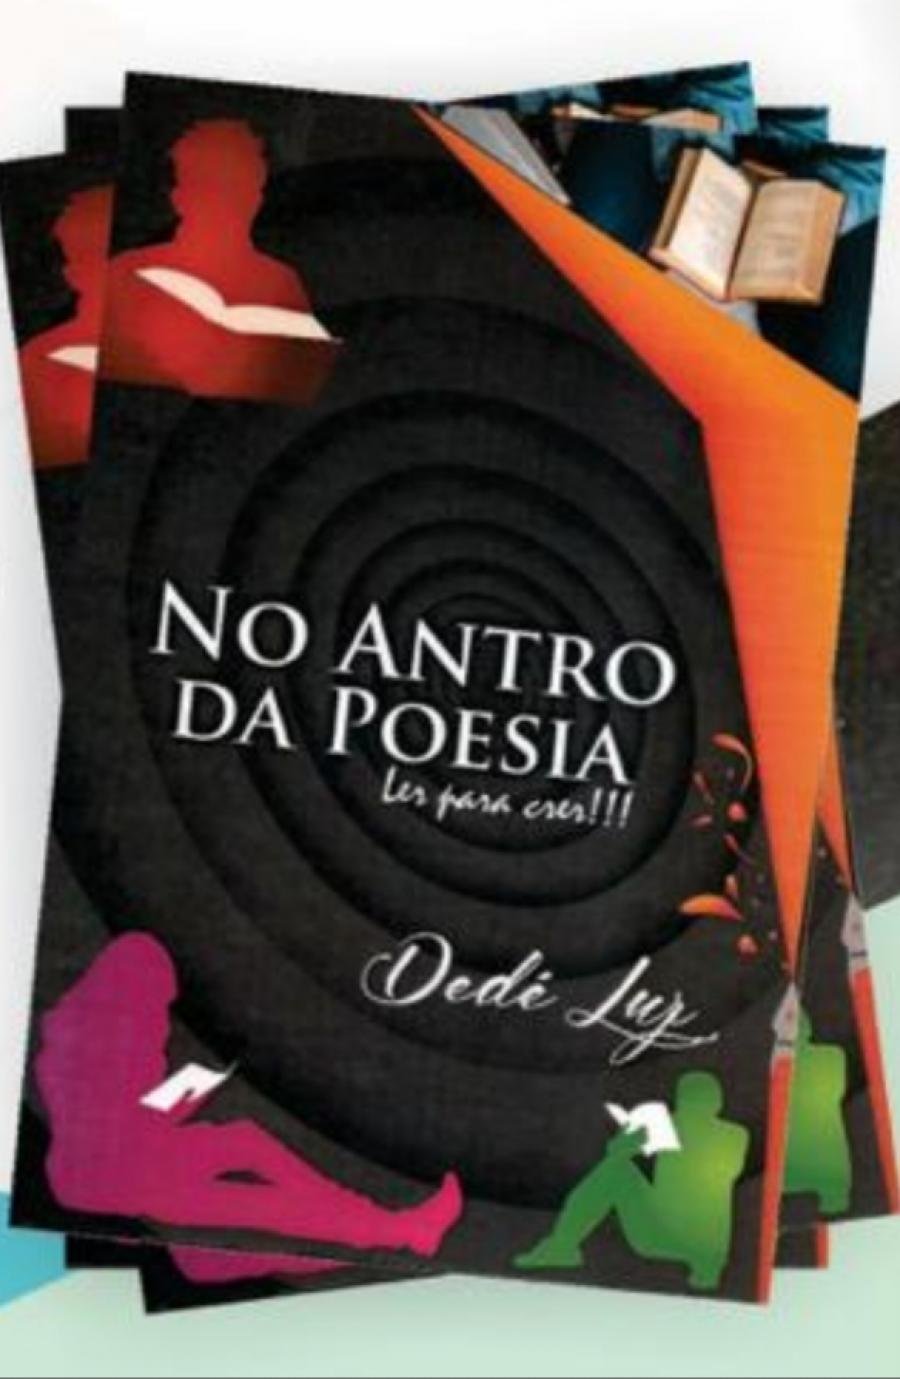 José Antônio da Luz (Dedé Luz) lança o livro - “No Antro da Poesia”